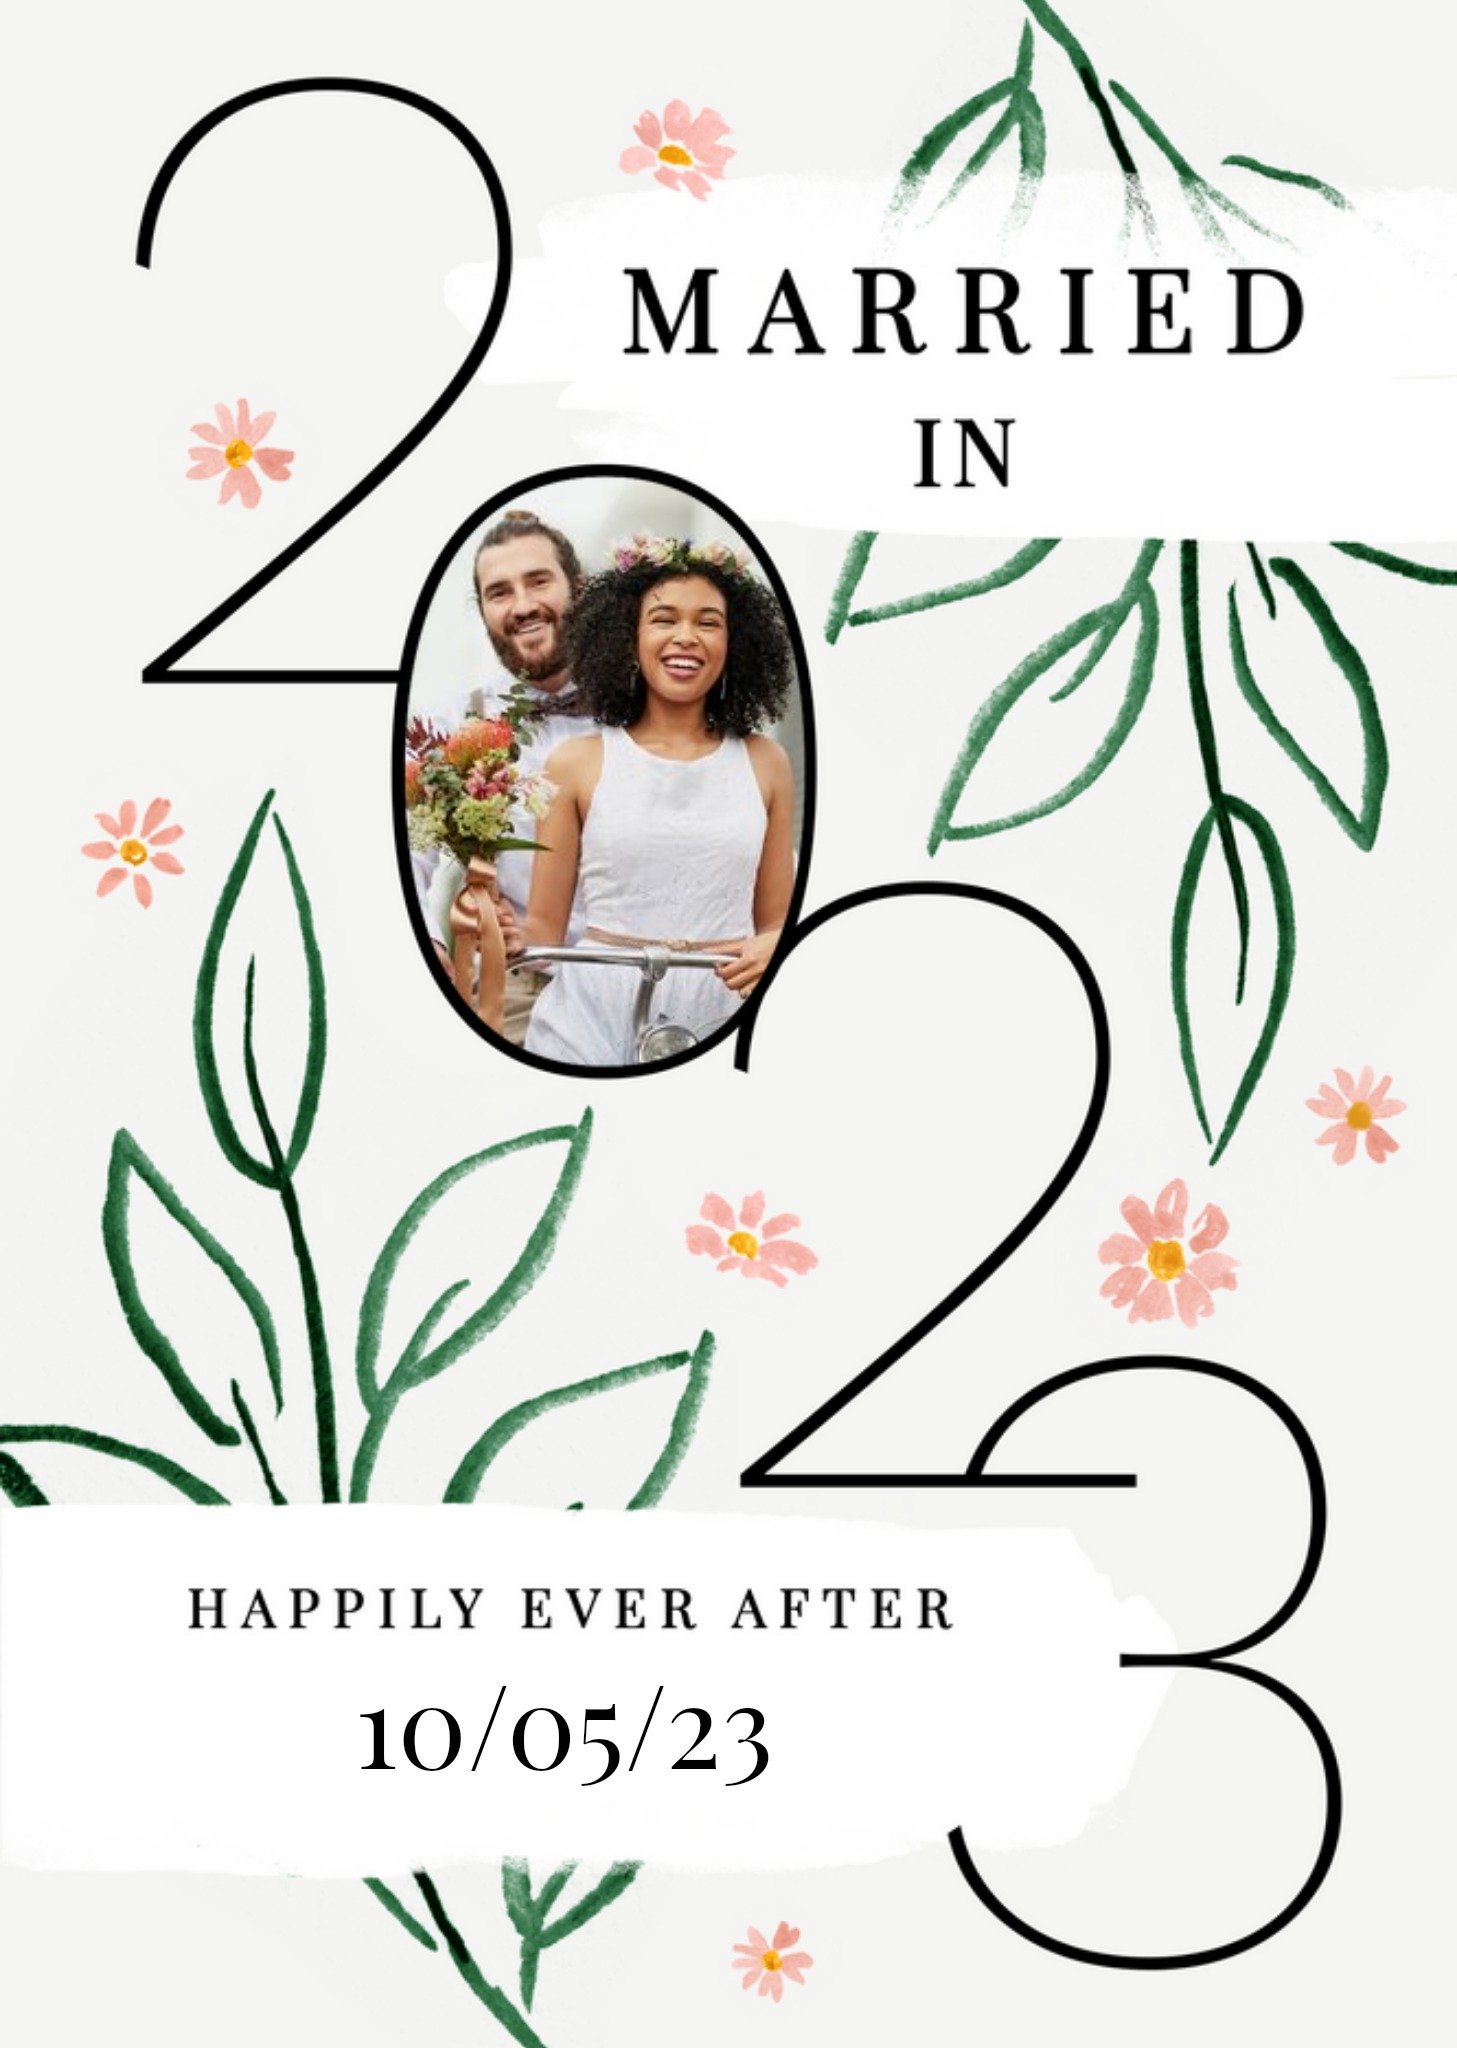 Moonpig Married In 2023 Photo Upload Wedding Card Ecard